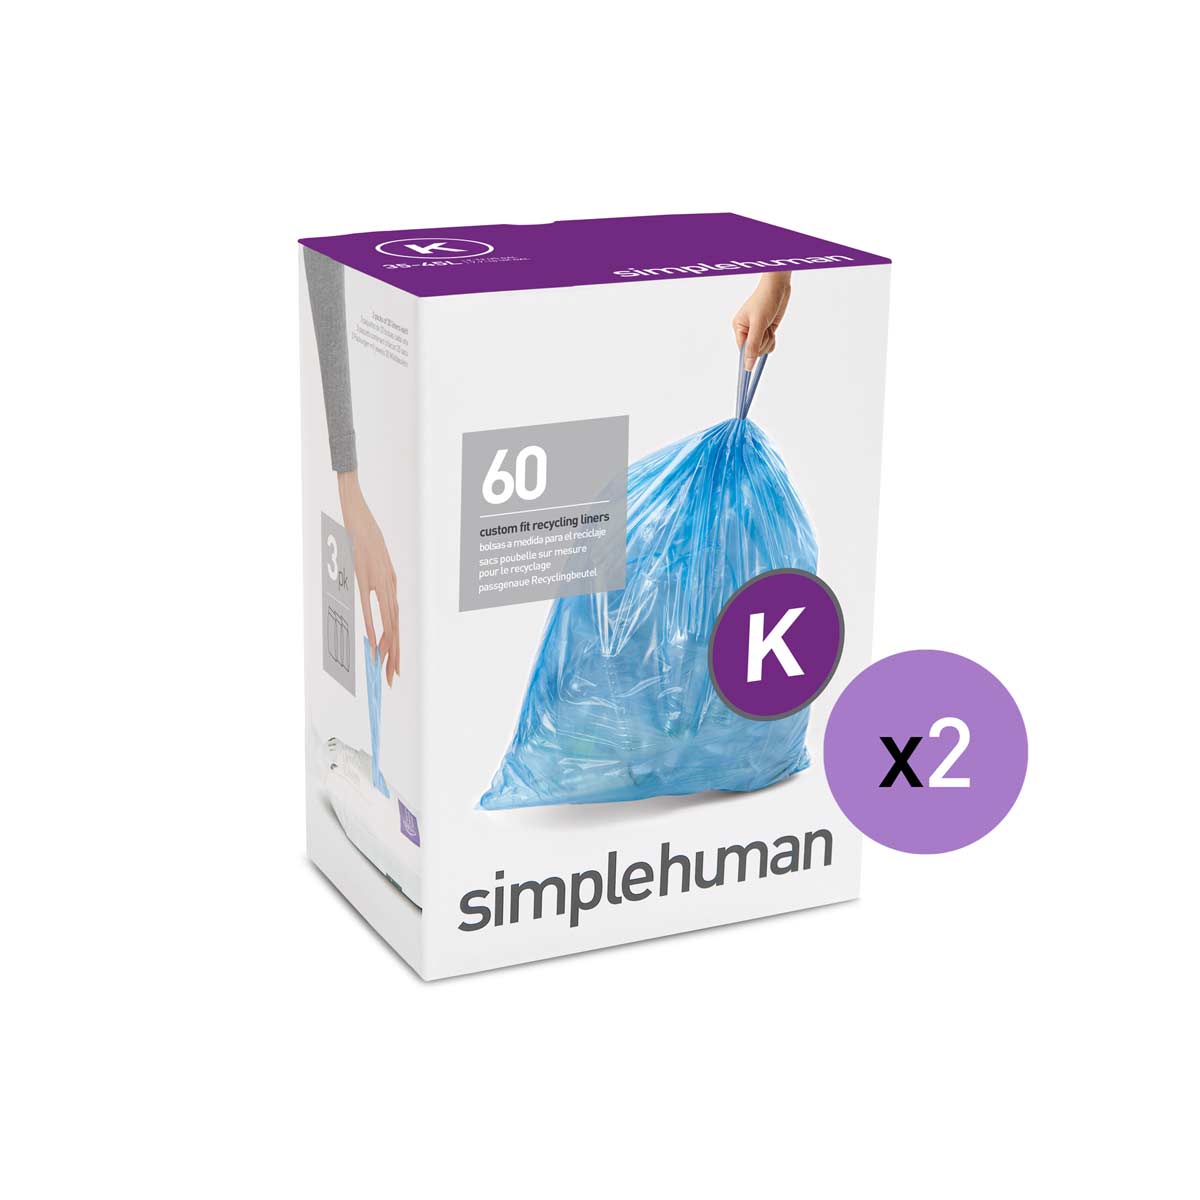  simplehuman Code K Custom Fit Drawstring Trash Bags in  Dispenser Packs, 60 Count, 35-45 Liter / 9.2-12 Gallon, Blue : Health &  Household